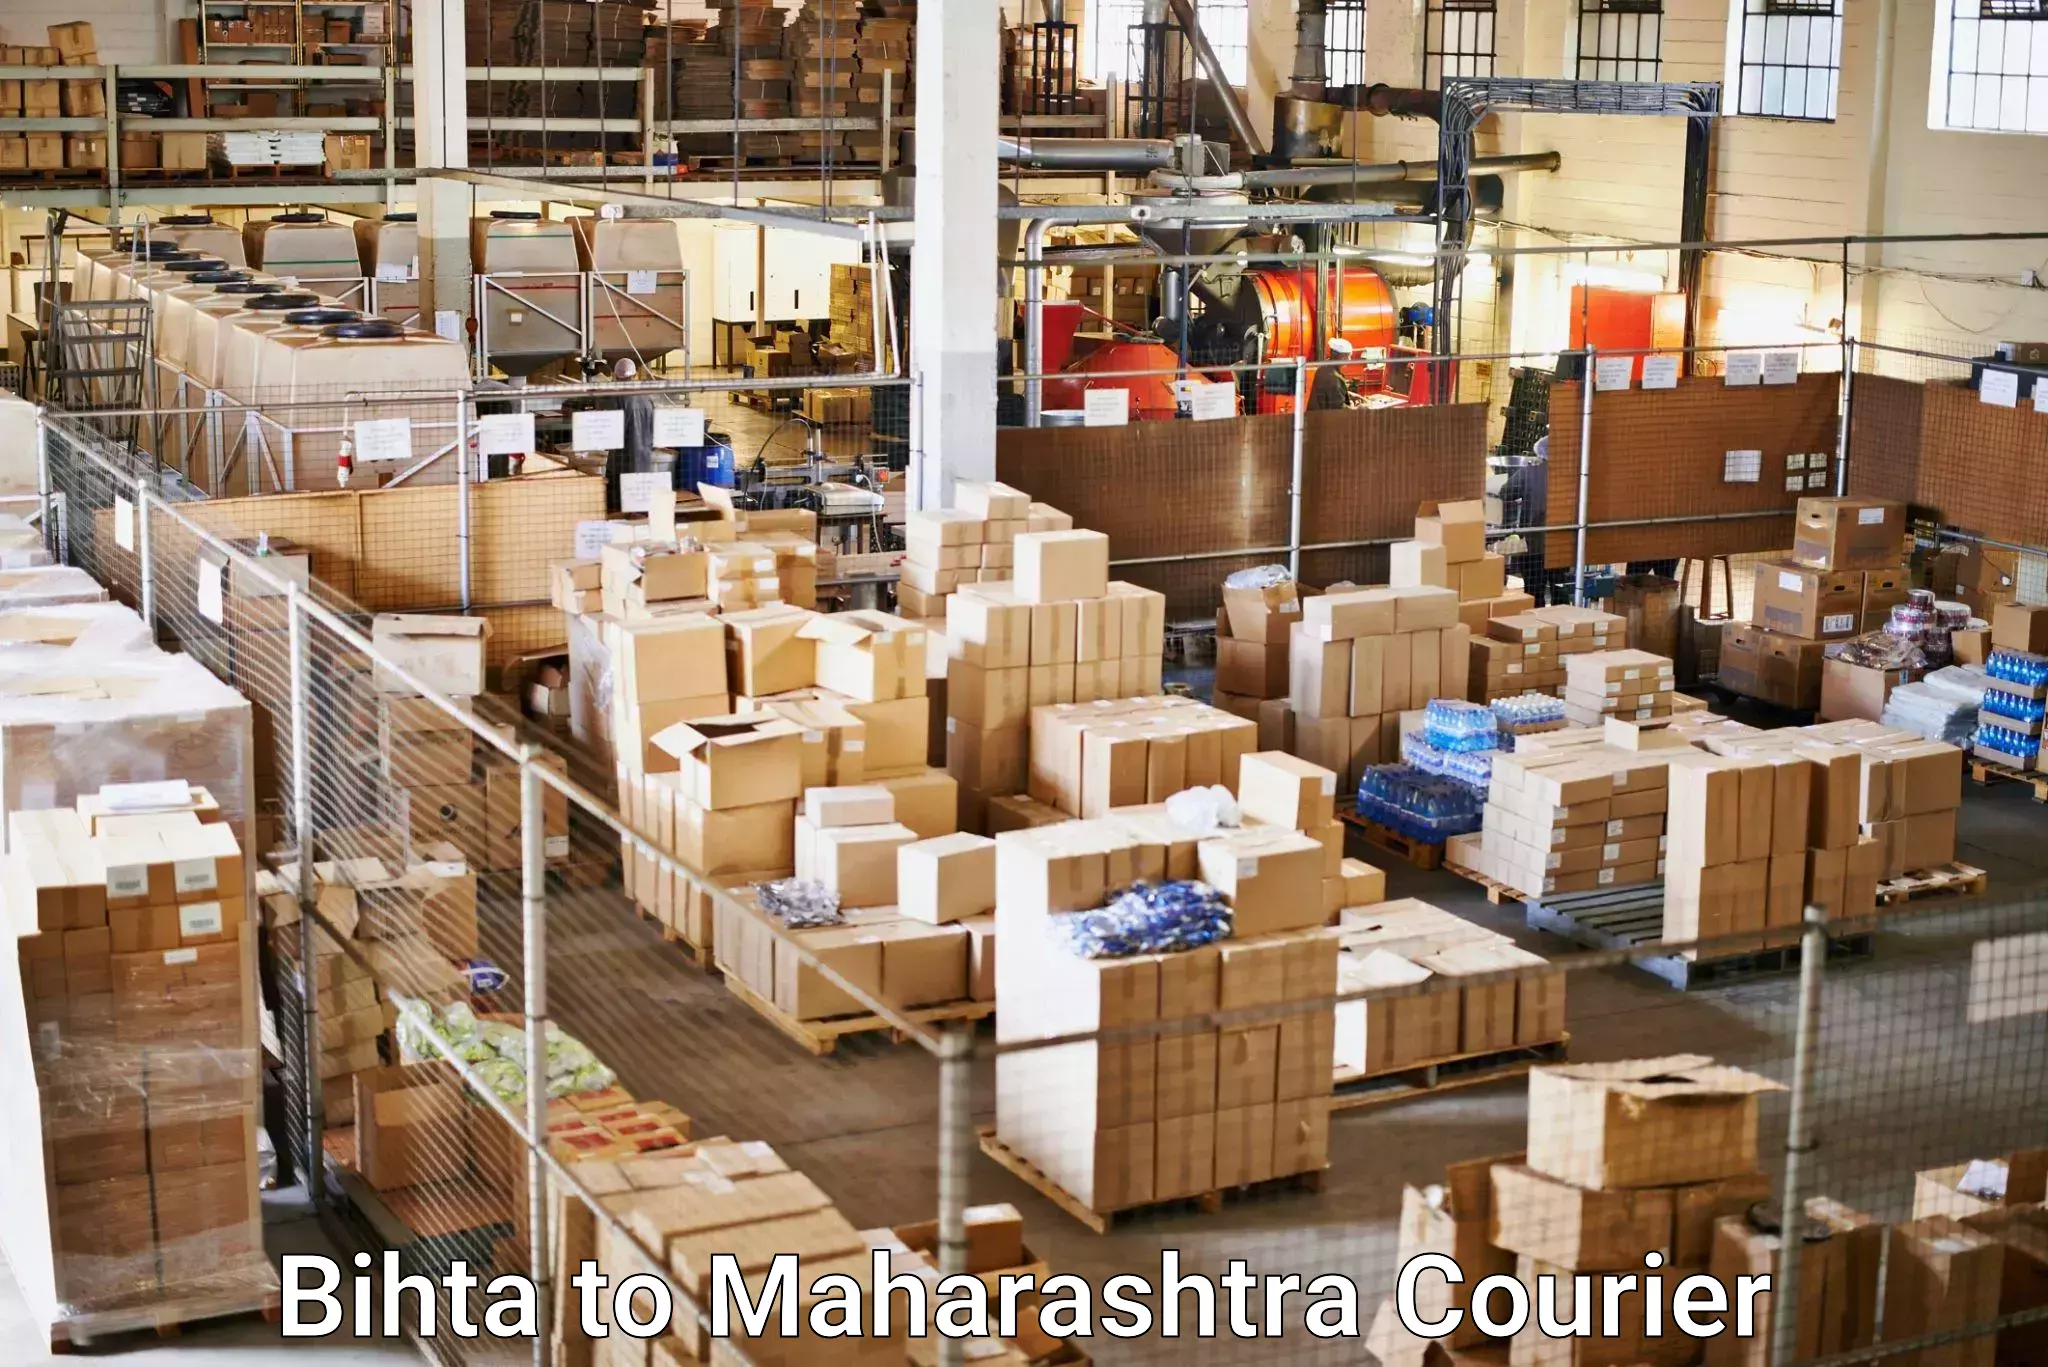 Tech-enabled shipping Bihta to Gadchiroli